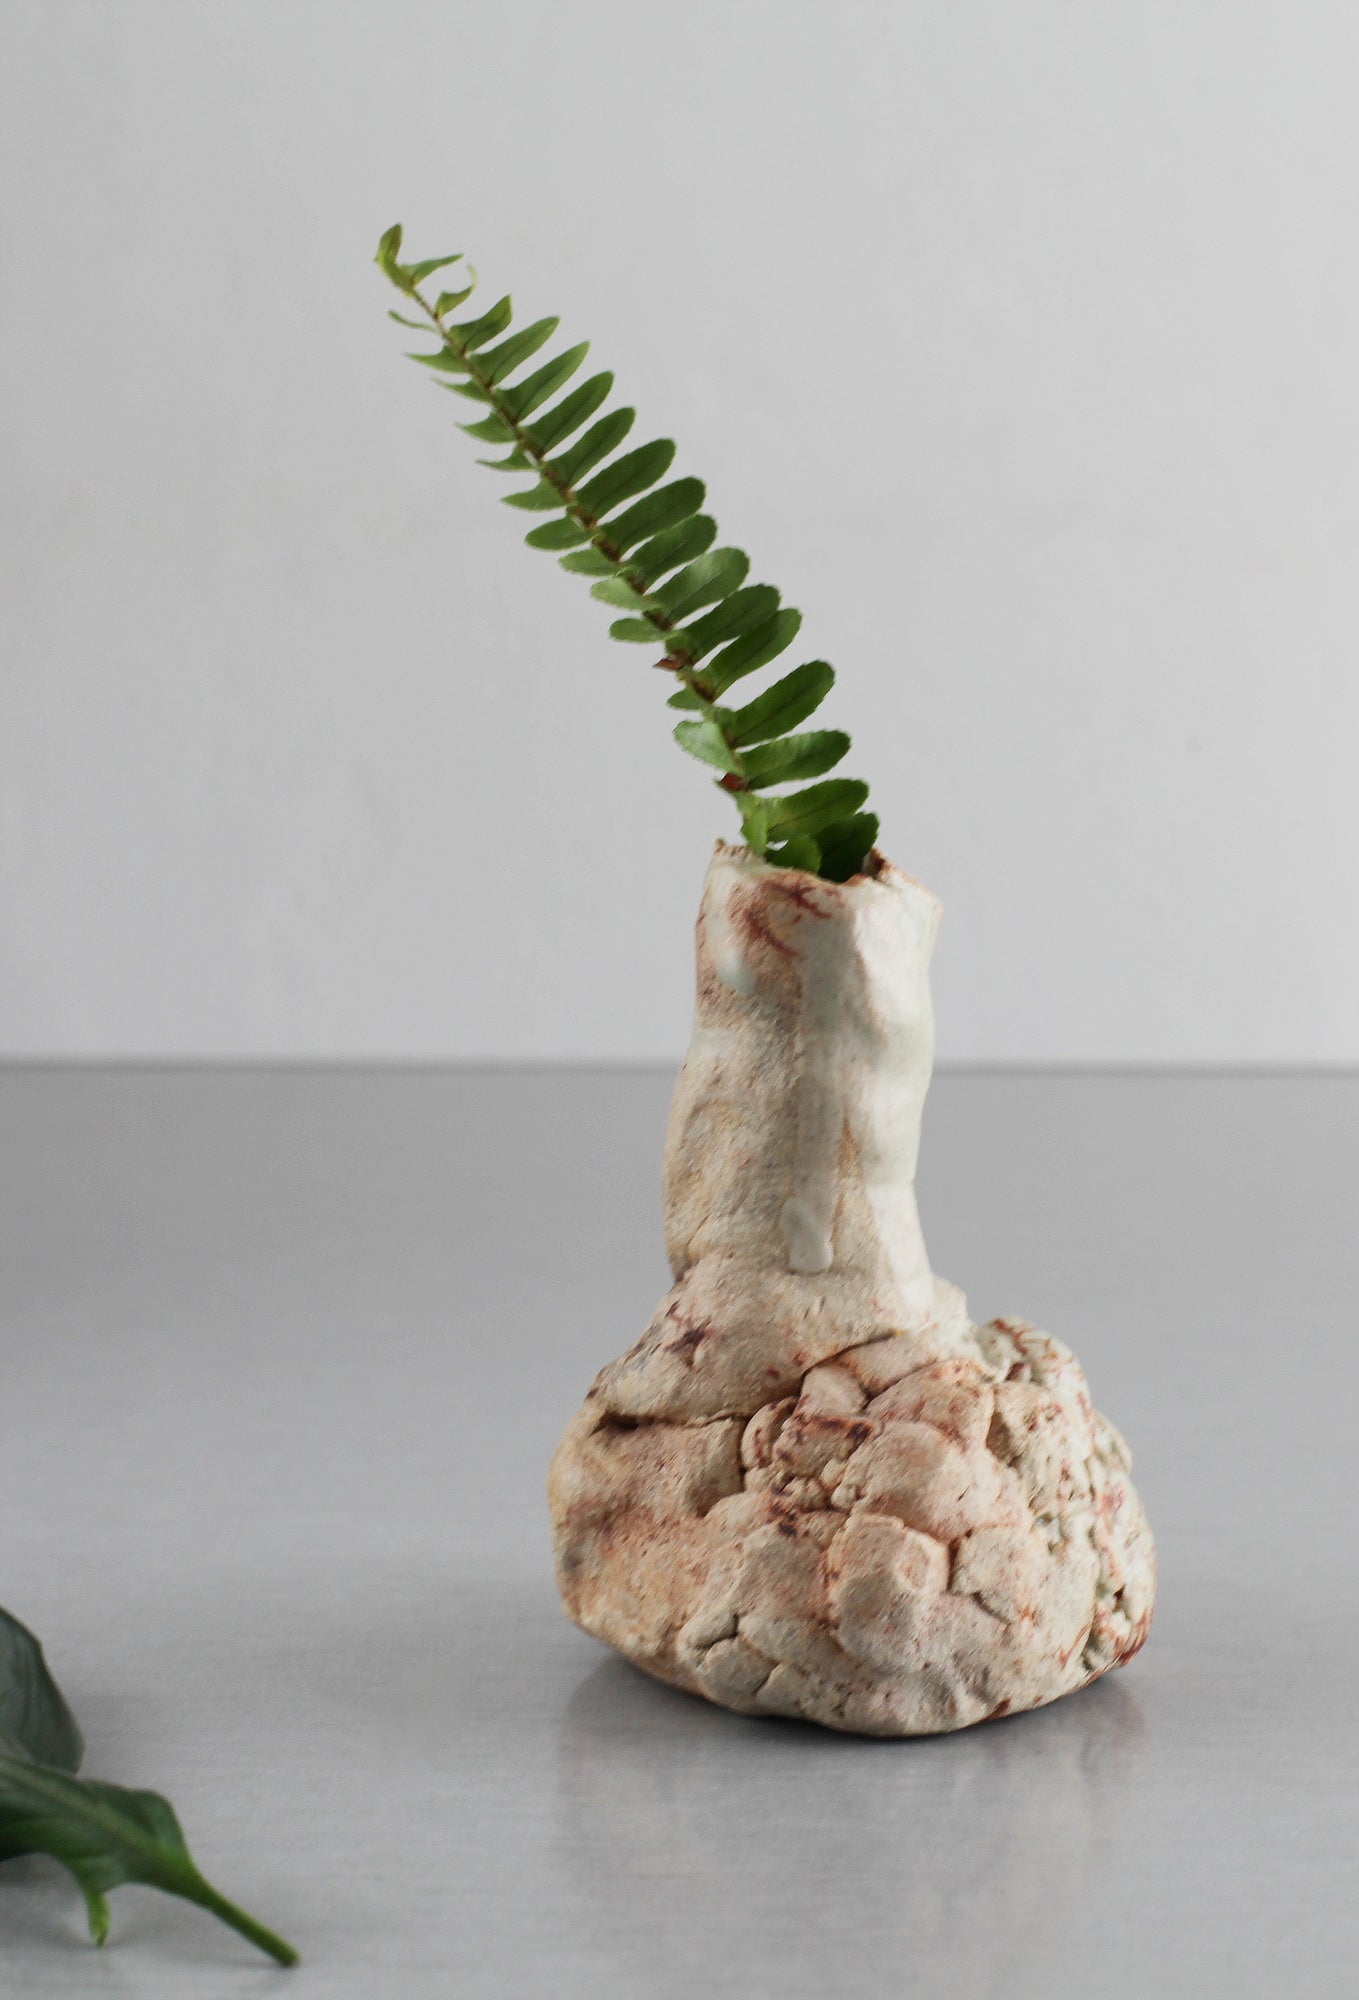 Bud vase, miniature vase, ikebana vessel, vessel, mini vase